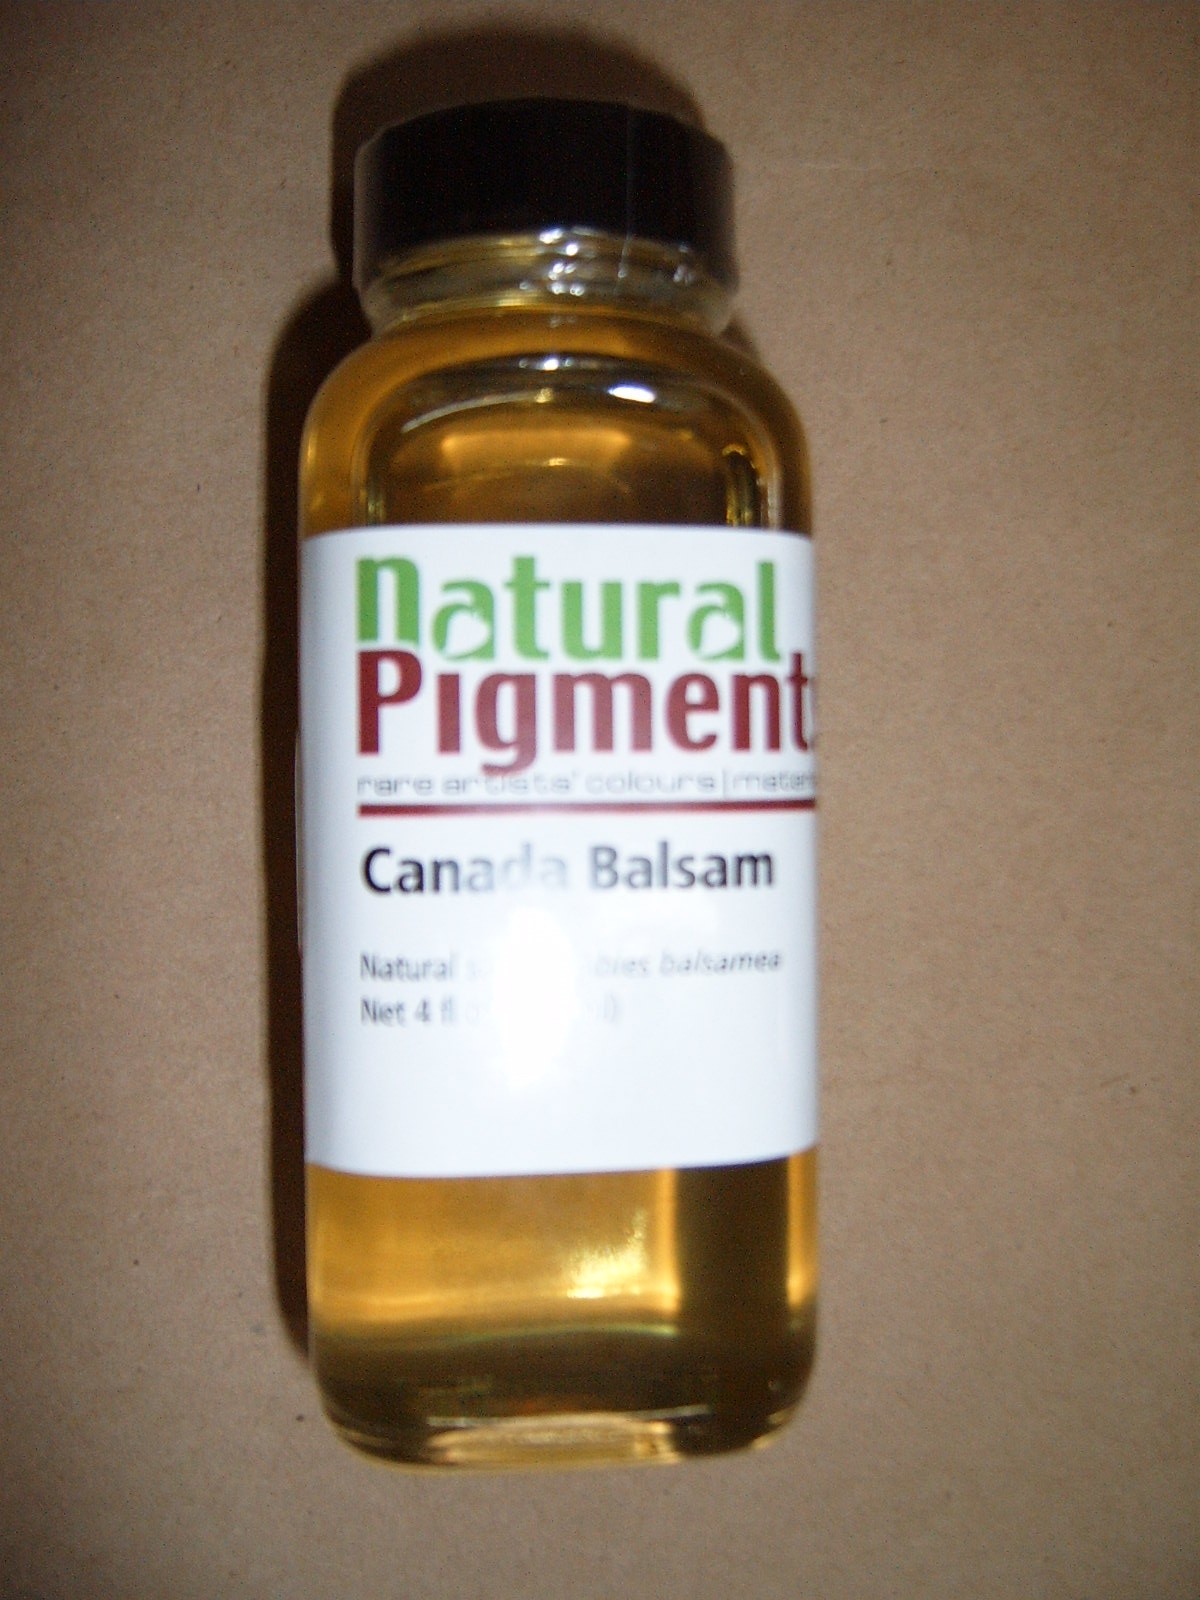 Natural Pigments Canada Balsam